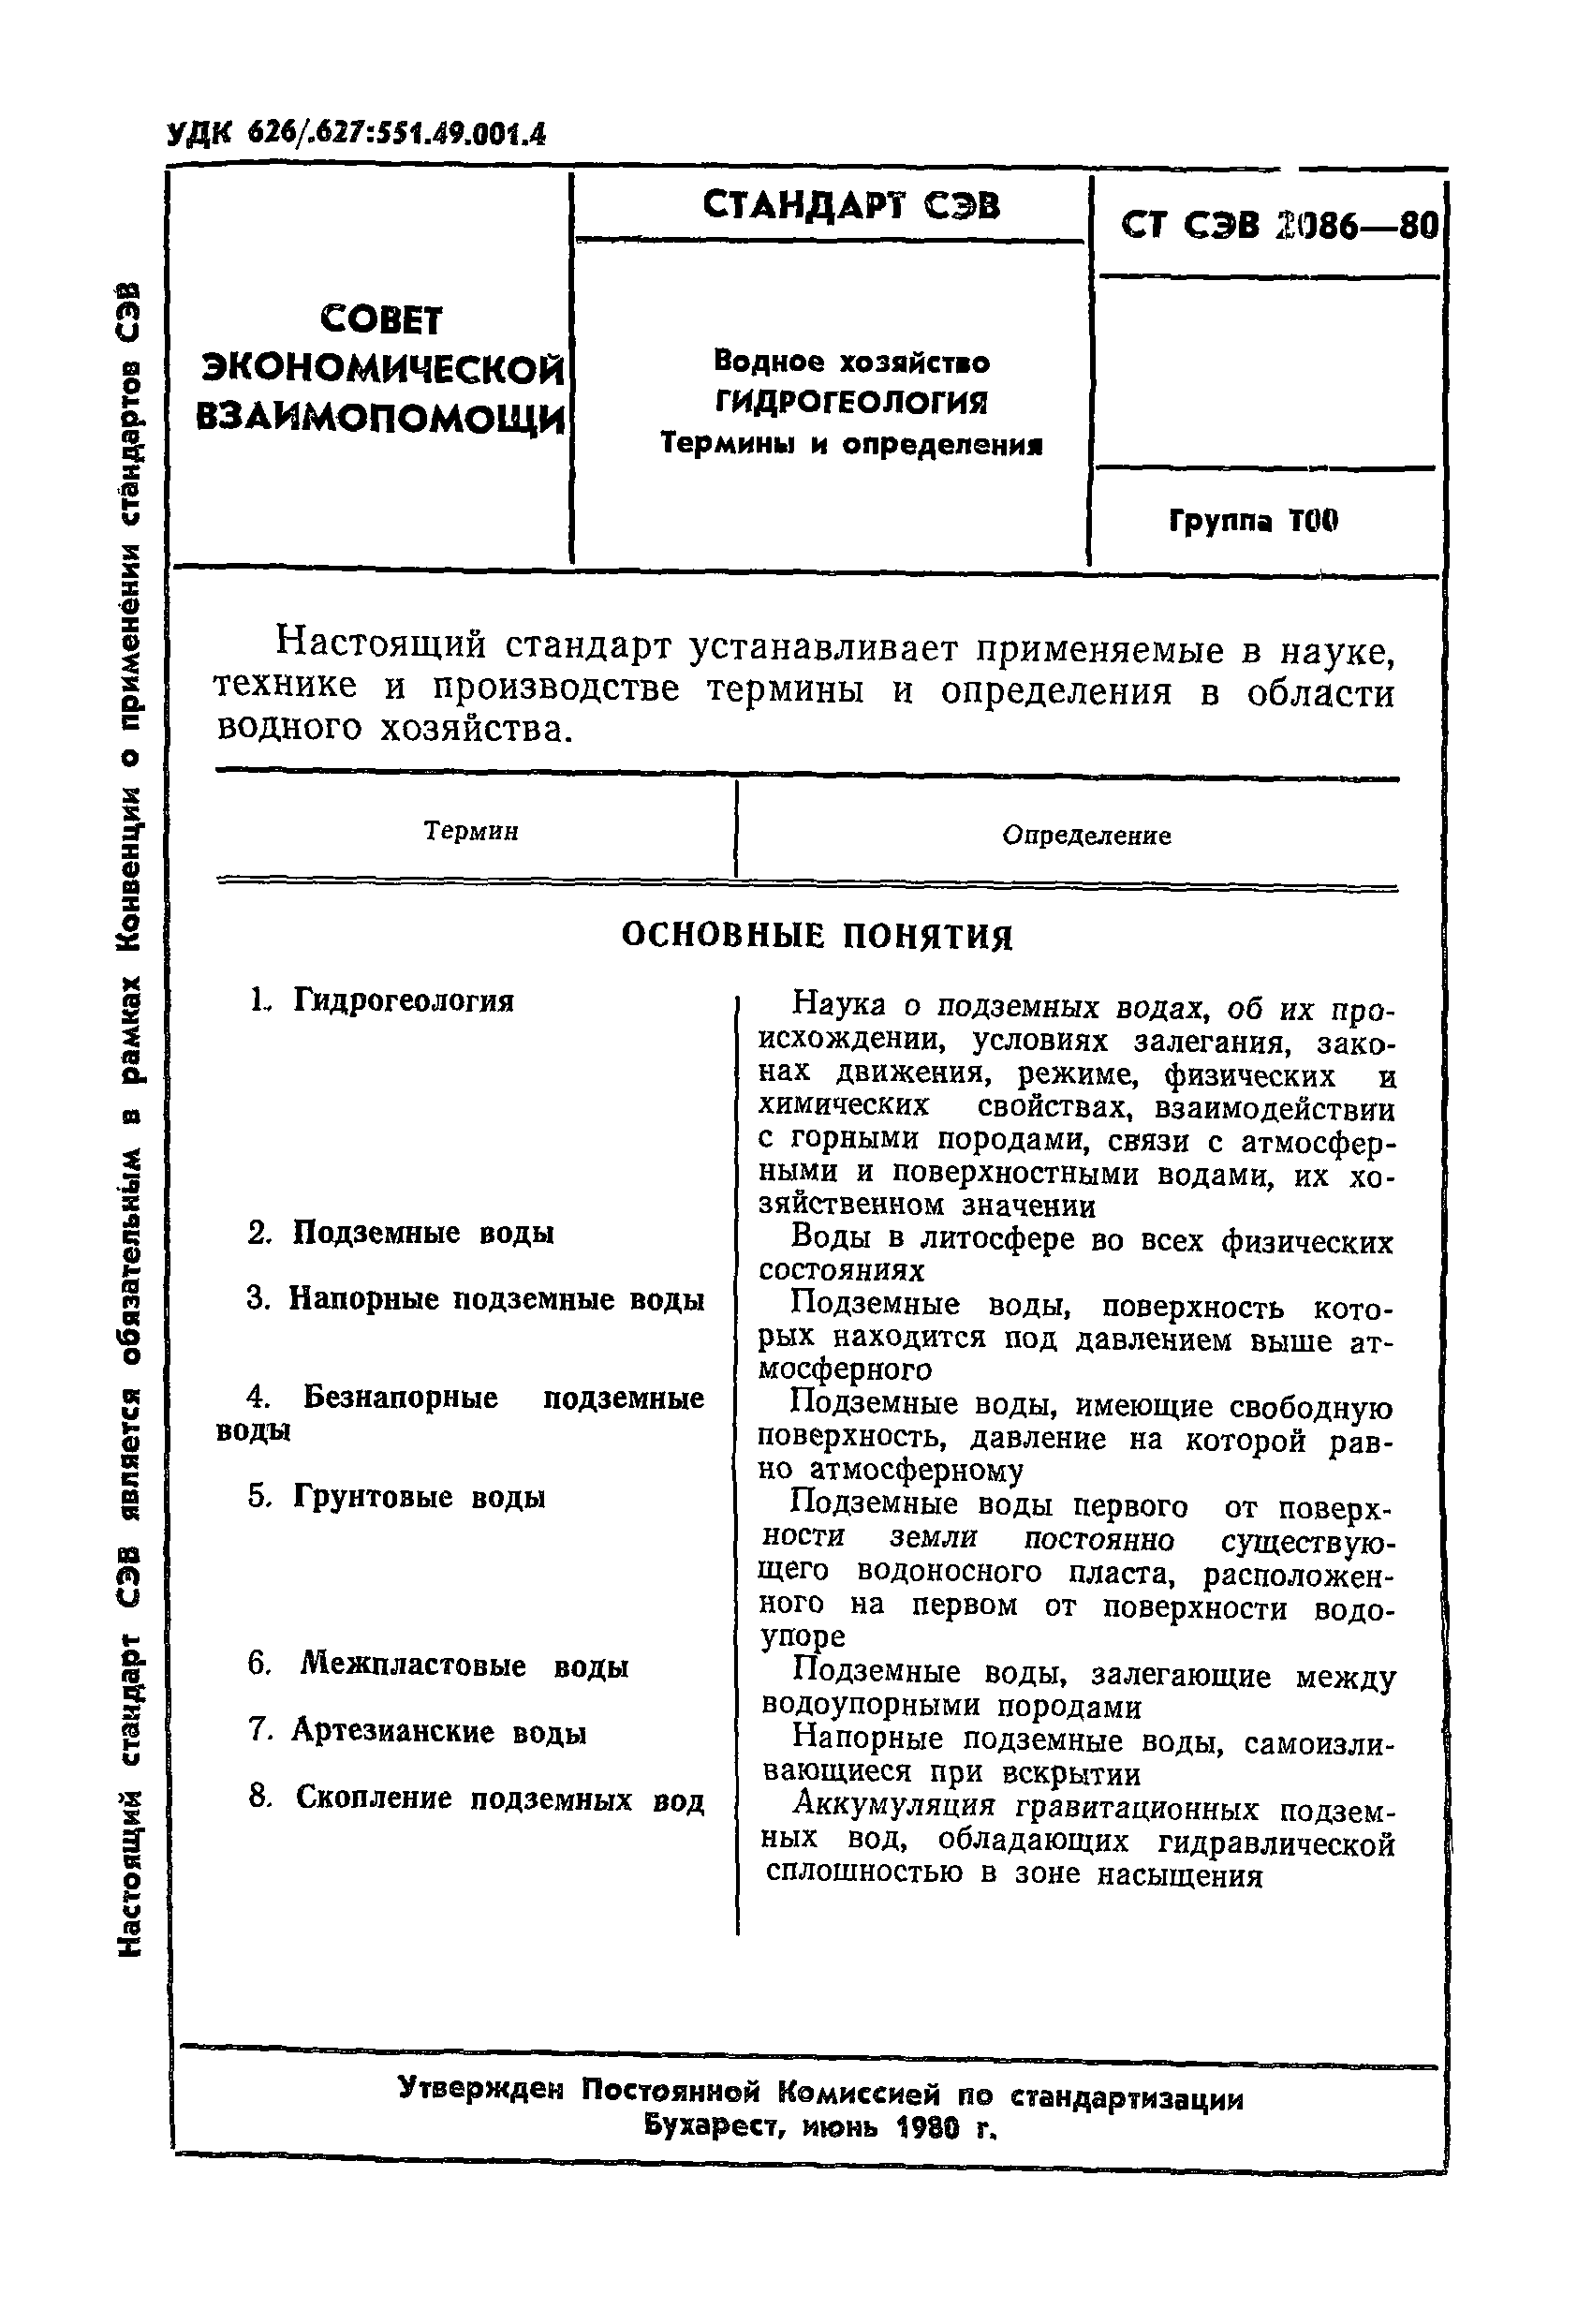 СТ СЭВ 2086-80